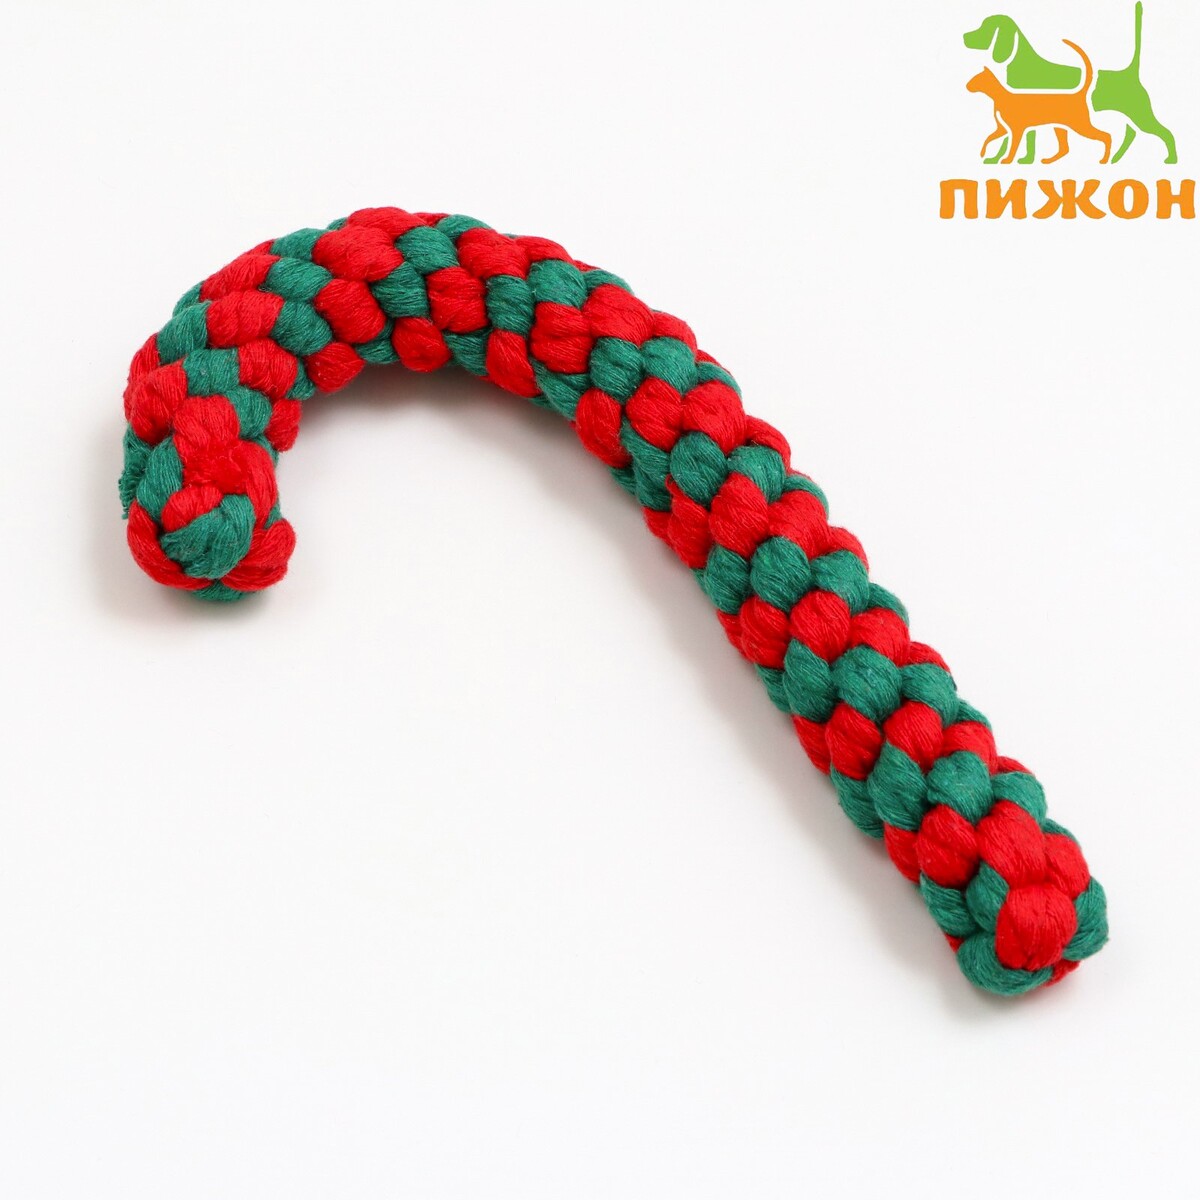 Игрушка канатная игрушка тренировочная канатная до 30 см 70 г белая зеленая красная